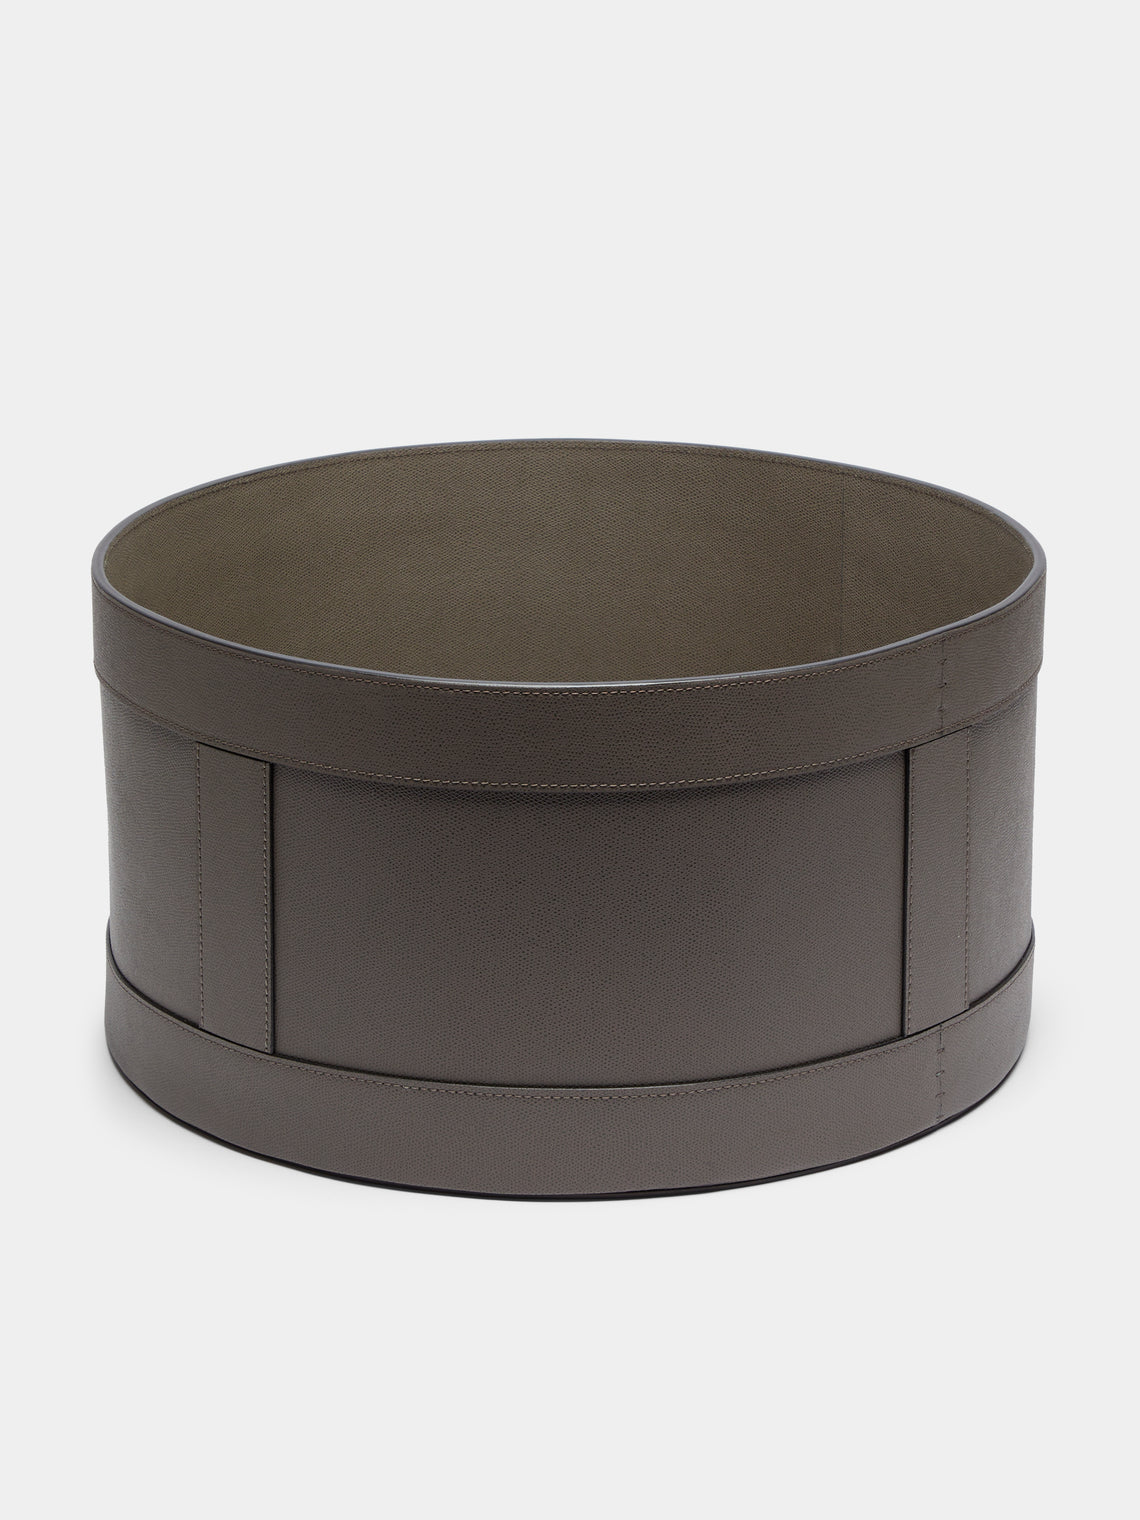 Giobagnara - Circular Leather Storage Basket - Taupe - ABASK